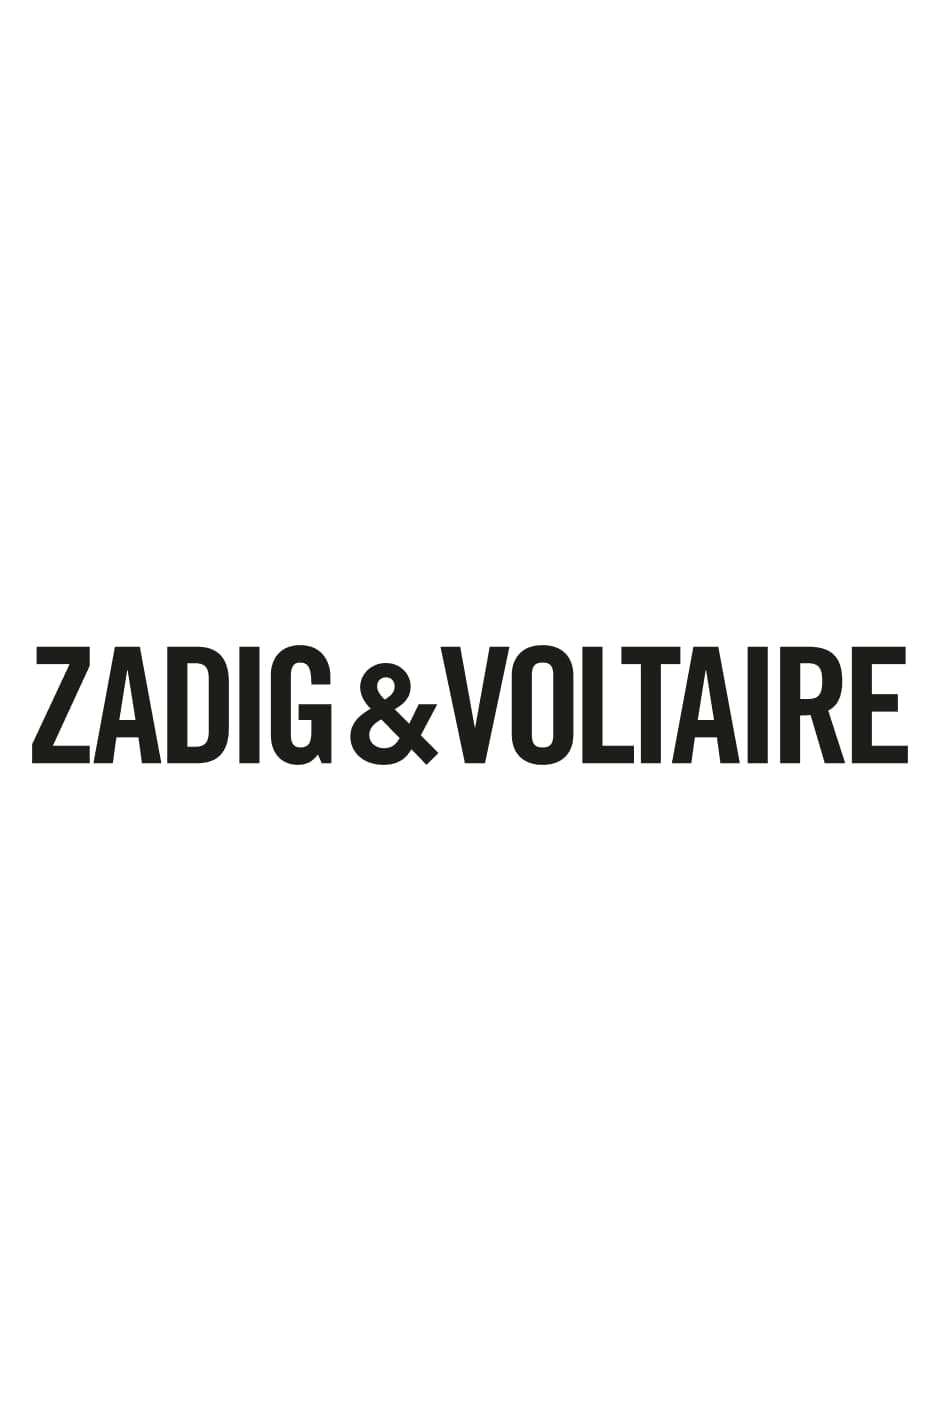 Zadig & Voltaire Leder Handtaschenriemen aus Leder in Mettallic Damen Taschen Taschen-Accessoires 